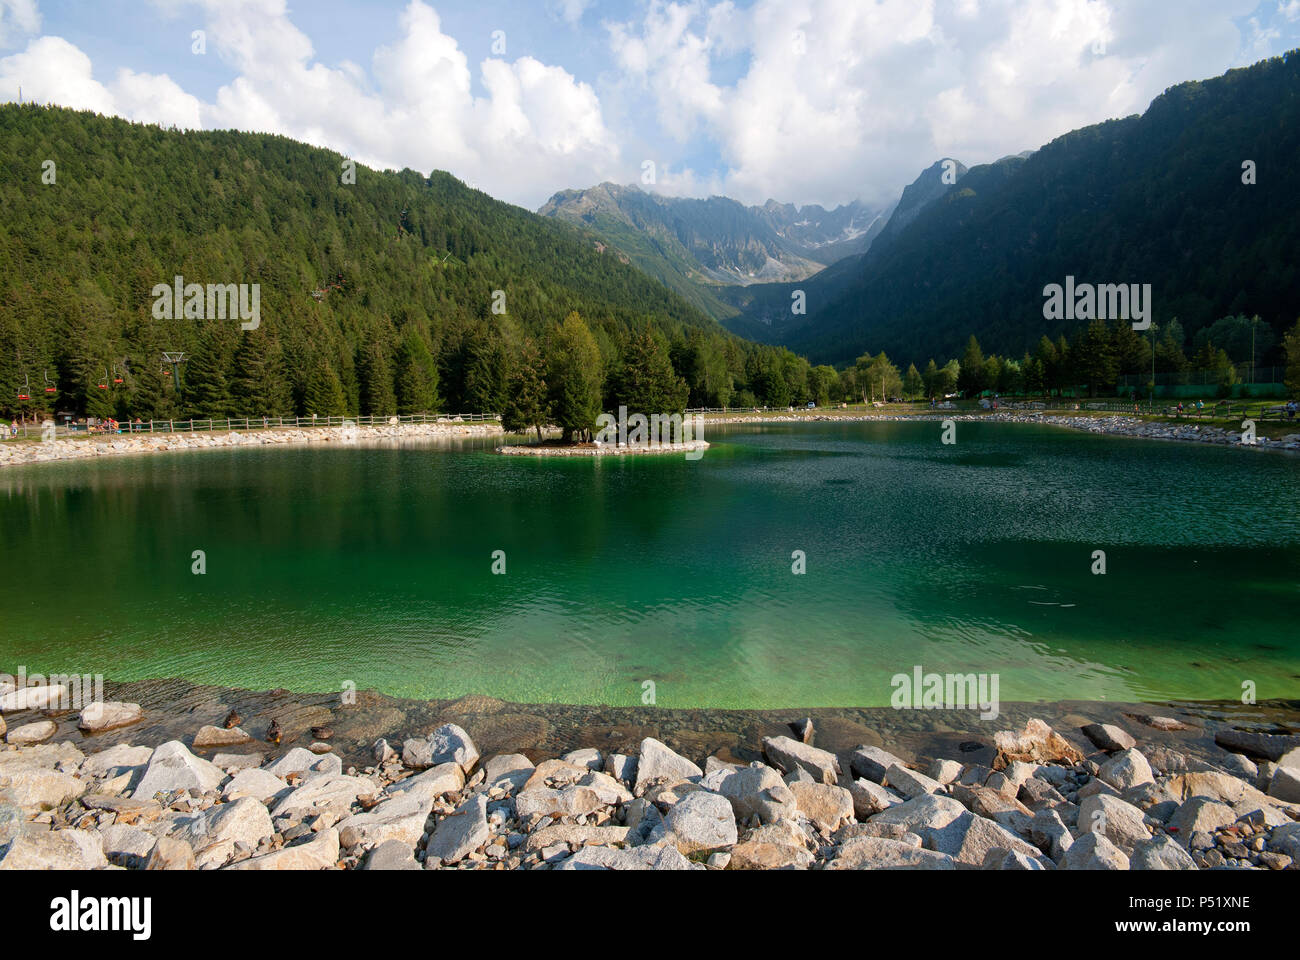 Lake of Valbione, Adamello Regional Park, Ponte di Legno, Lombardy, Italy Stock Photo